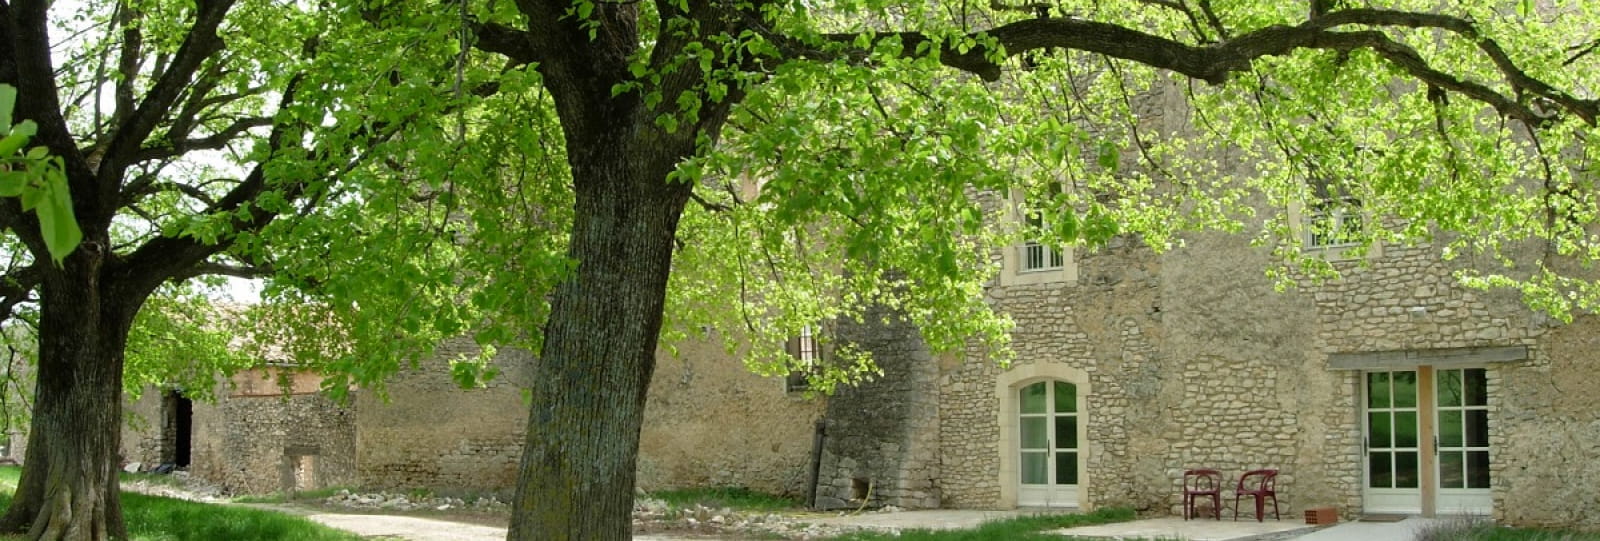 Château de la Gabelle